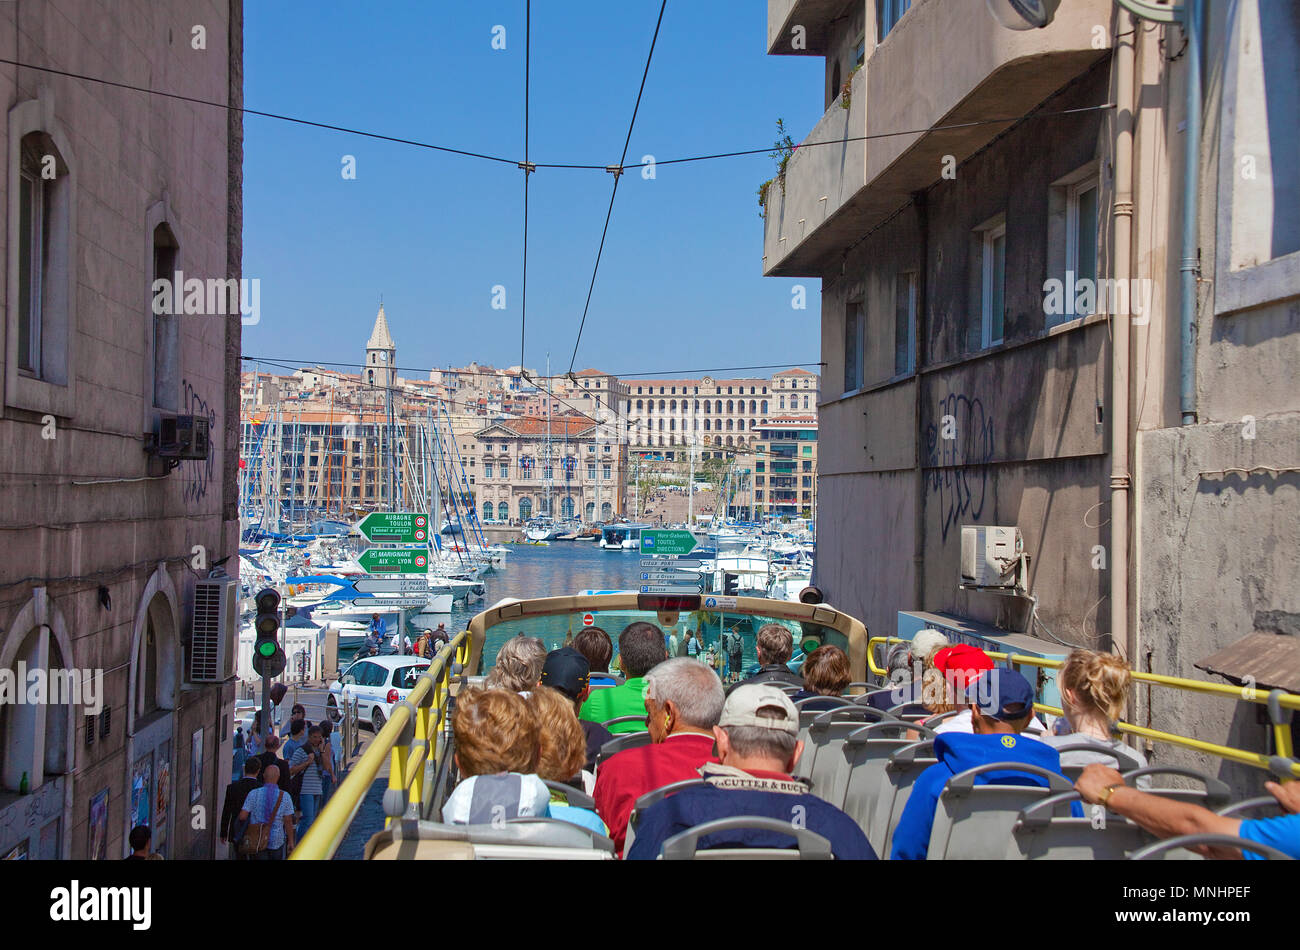 City tour en bus turístico, conduce al estrecho callejón del viejo puerto Vieux Port, Marseille, Bouches-du-Rhone, Provence-Alpes-Côte d'Azur, Francia Foto de stock